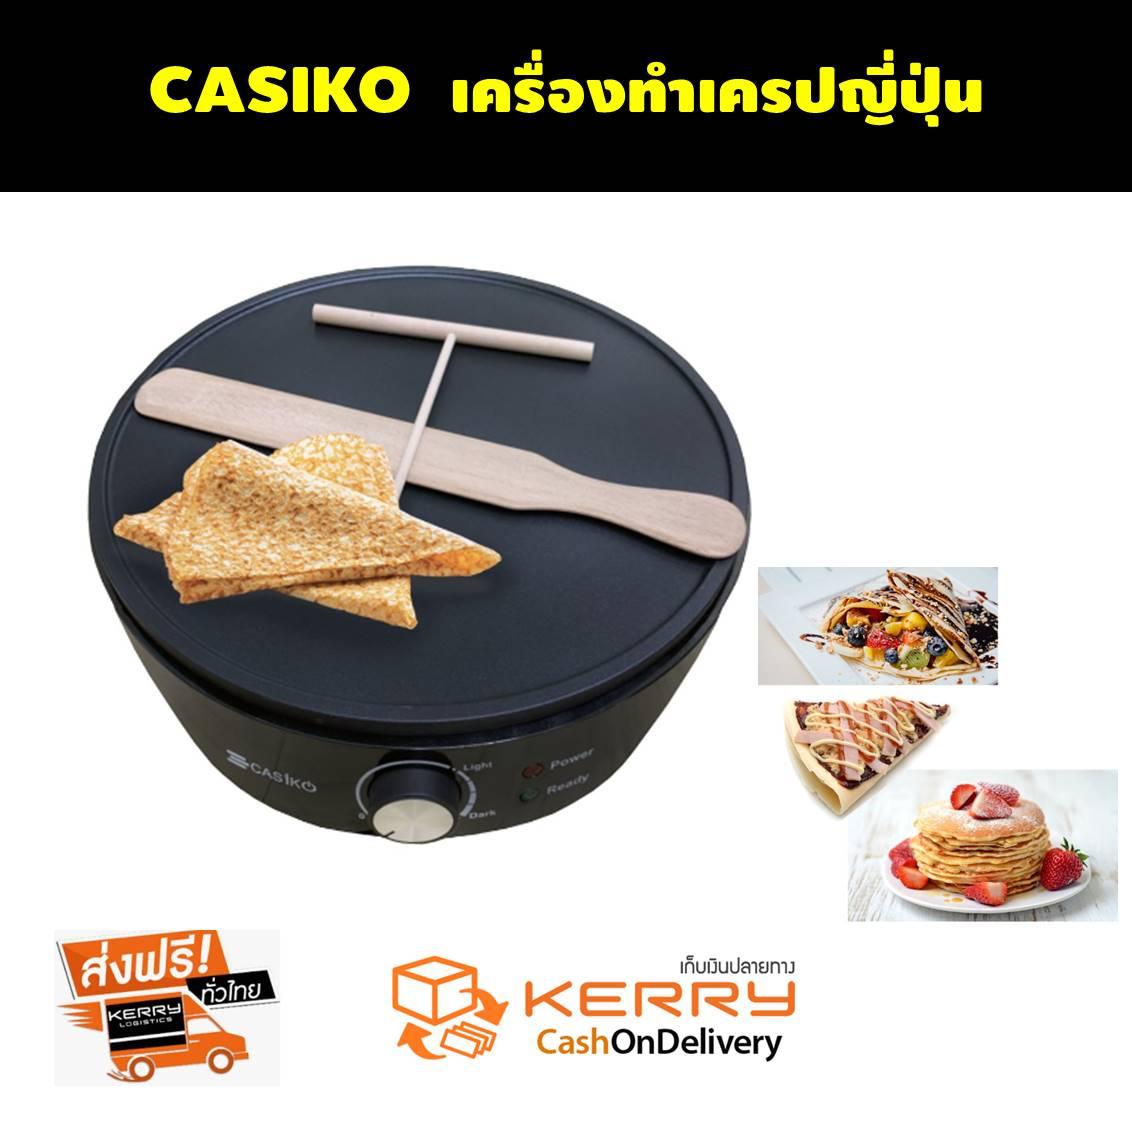 CASIKO เครื่องทำเครป เครป เครื่องทำแพนเค้ก  เครื่องทำเครป เตาเครป เครปญี่ปุ่น กระทะเครป เครื่องทำแพนเค้ก เครื่องทําเครปไฟฟ้า เตาโตเกียว ทำขนม ขนมโตเกียว ขนมเบื้อง แพนเค้ก ทําเครปกินเอง ทําเครปญี่ปุ่นขาย Crepes Maker แถมฟรีไม้หมุนแป้งเครปและไม้พาย 12 นิ้ว